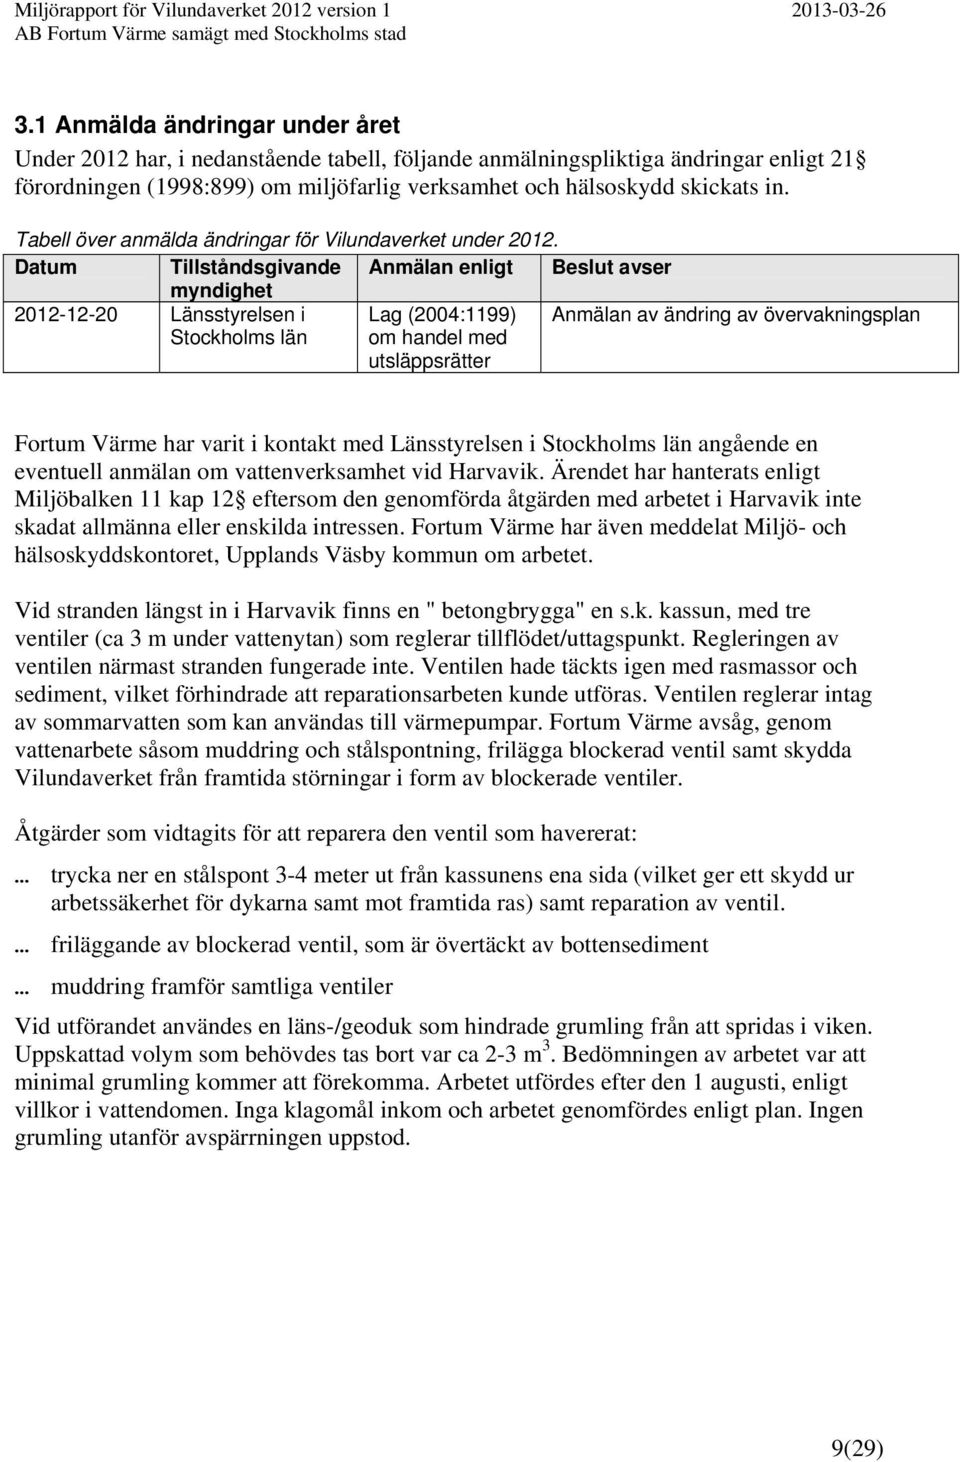 Datum Tillståndsgivande Anmälan enligt Beslut avser myndighet 2012-12-20 Länsstyrelsen i Stockholms län Lag (2004:1199) om handel med utsläppsrätter Anmälan av ändring av övervakningsplan Fortum